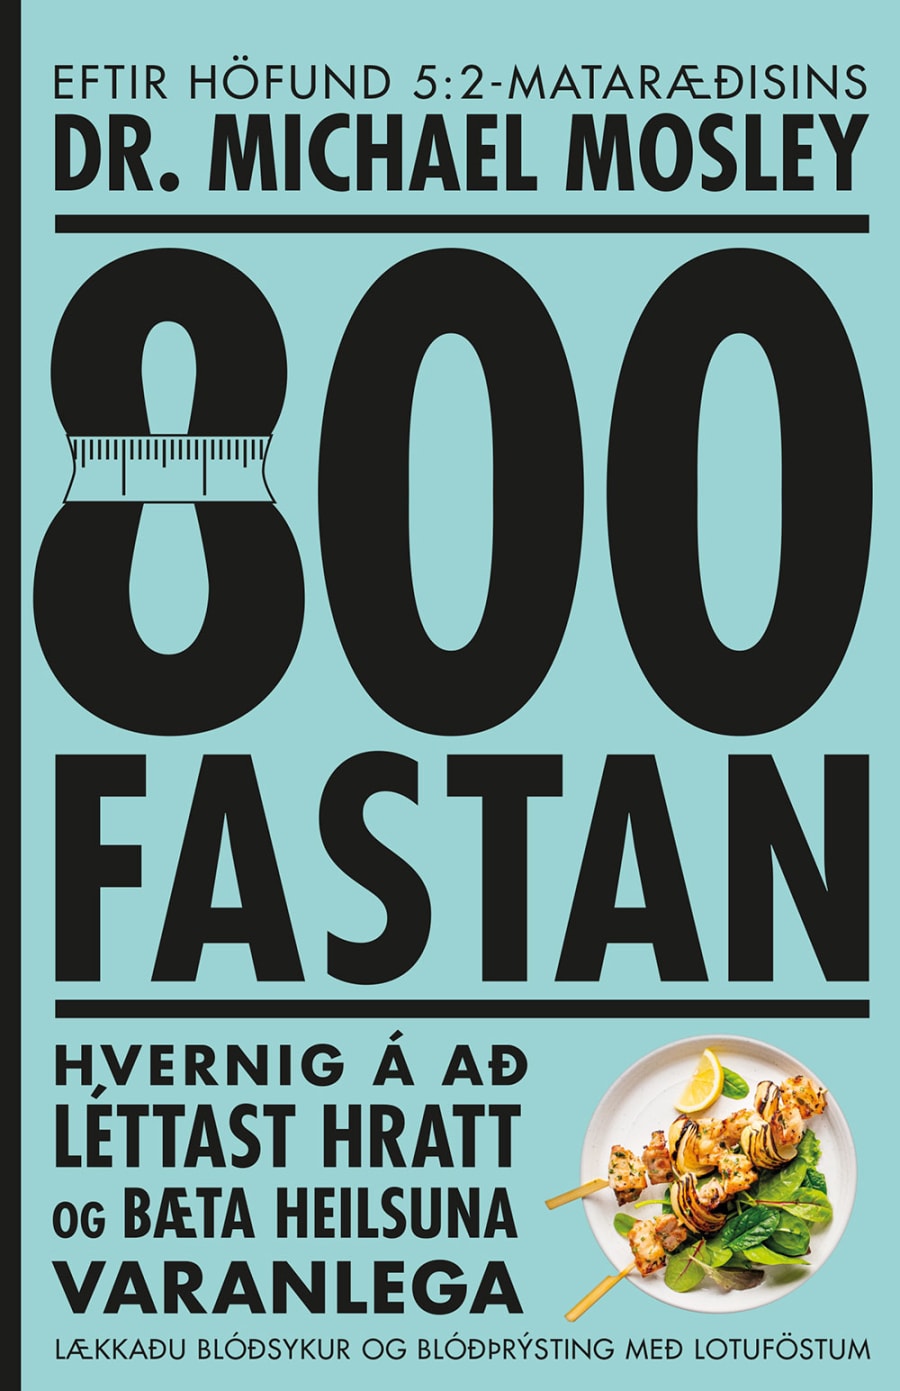 800-fastan